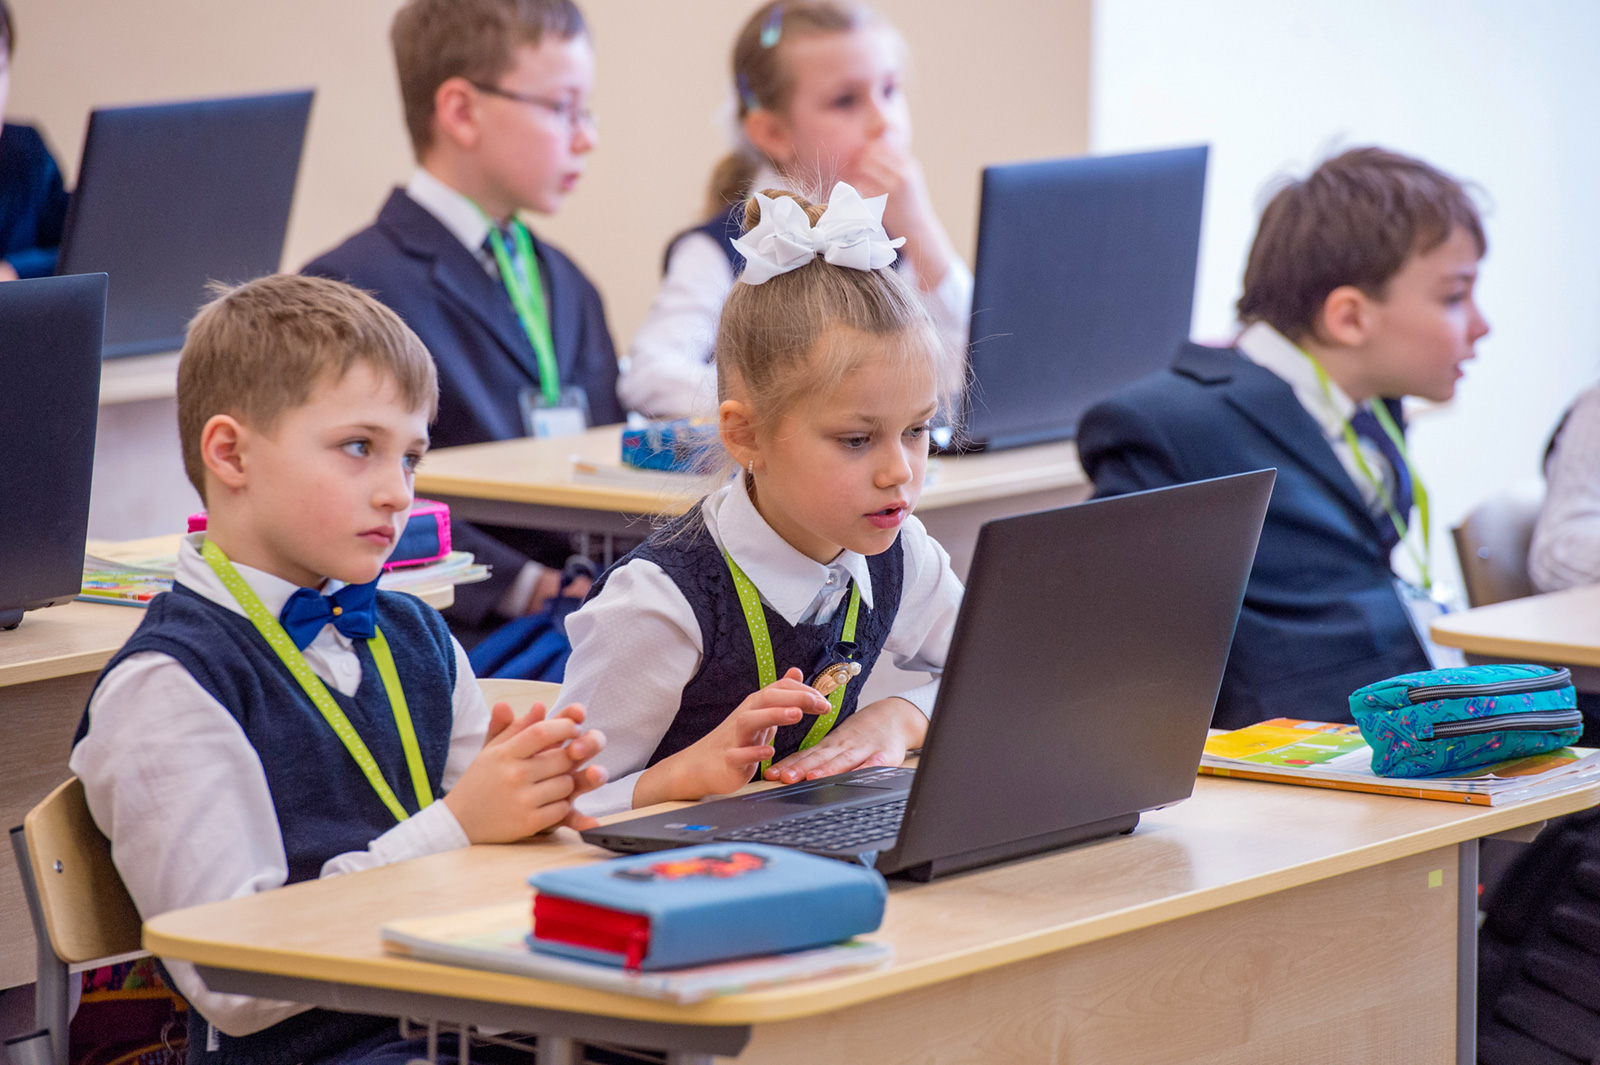 В российских школах планируют проводить уроки информационной безопасности и цифровой грамотности